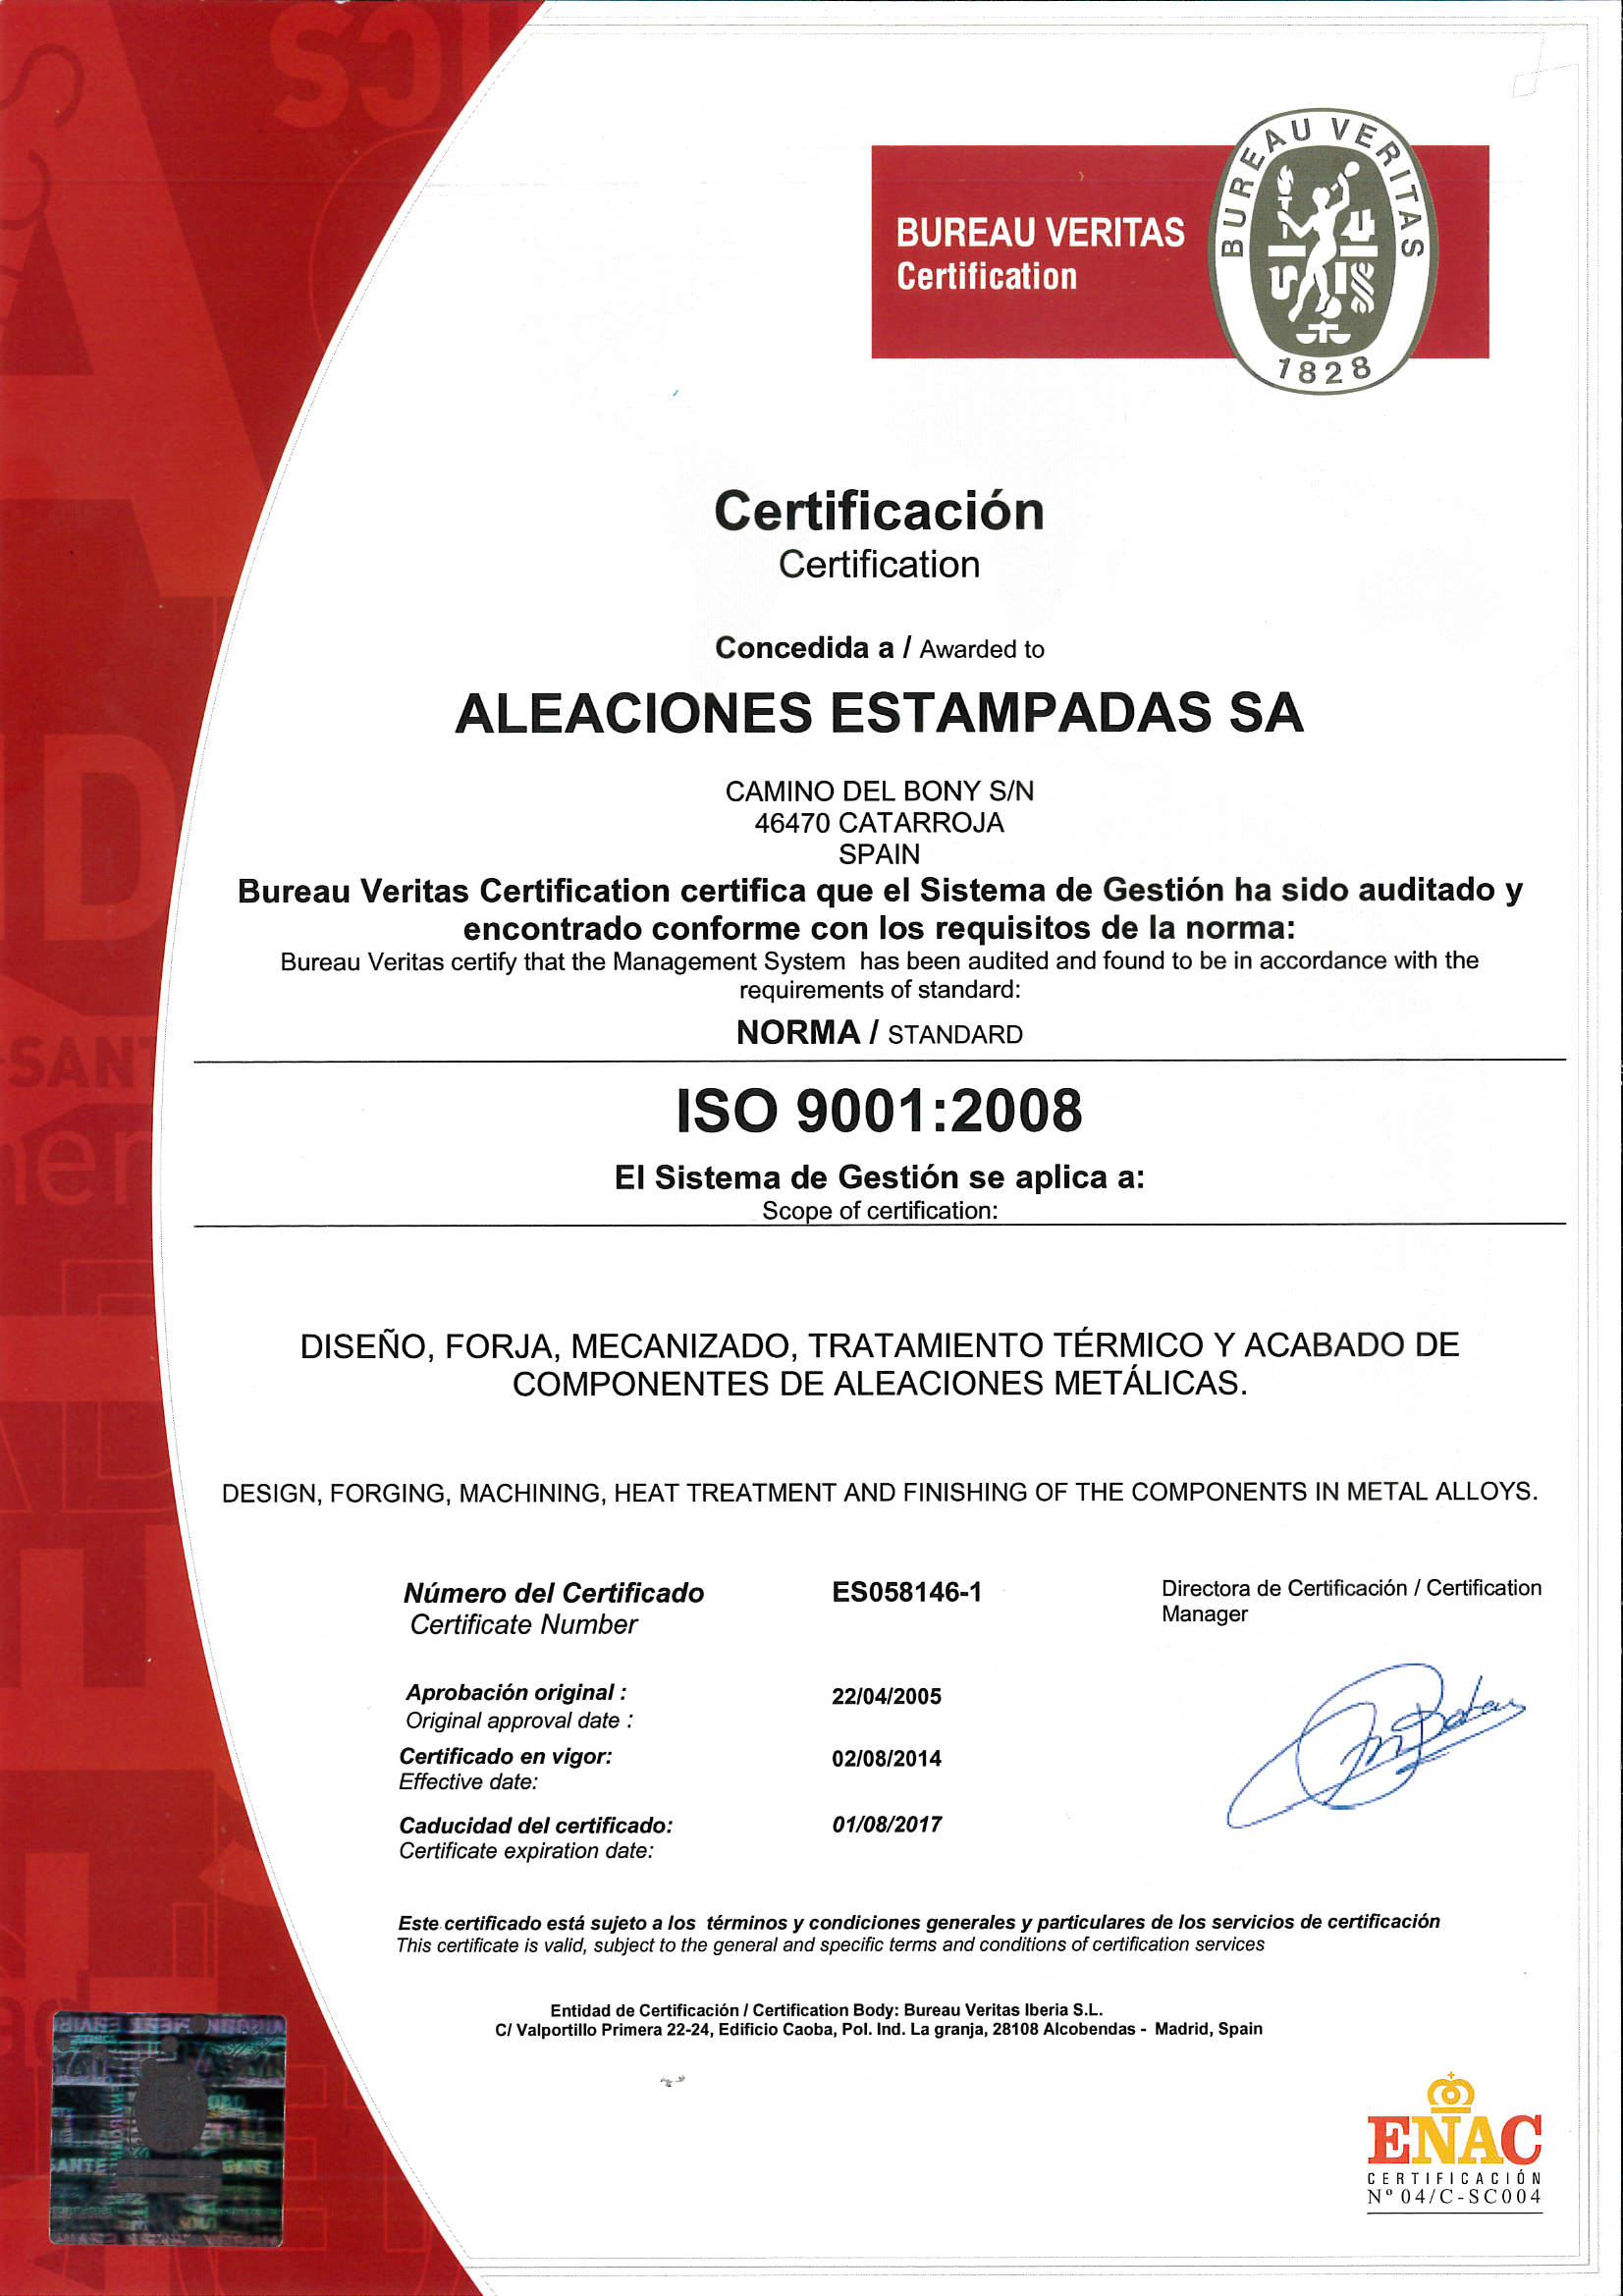 Aleaciones Estampadas, S.A. - AESA Certificada desde 2005 ISO 9001